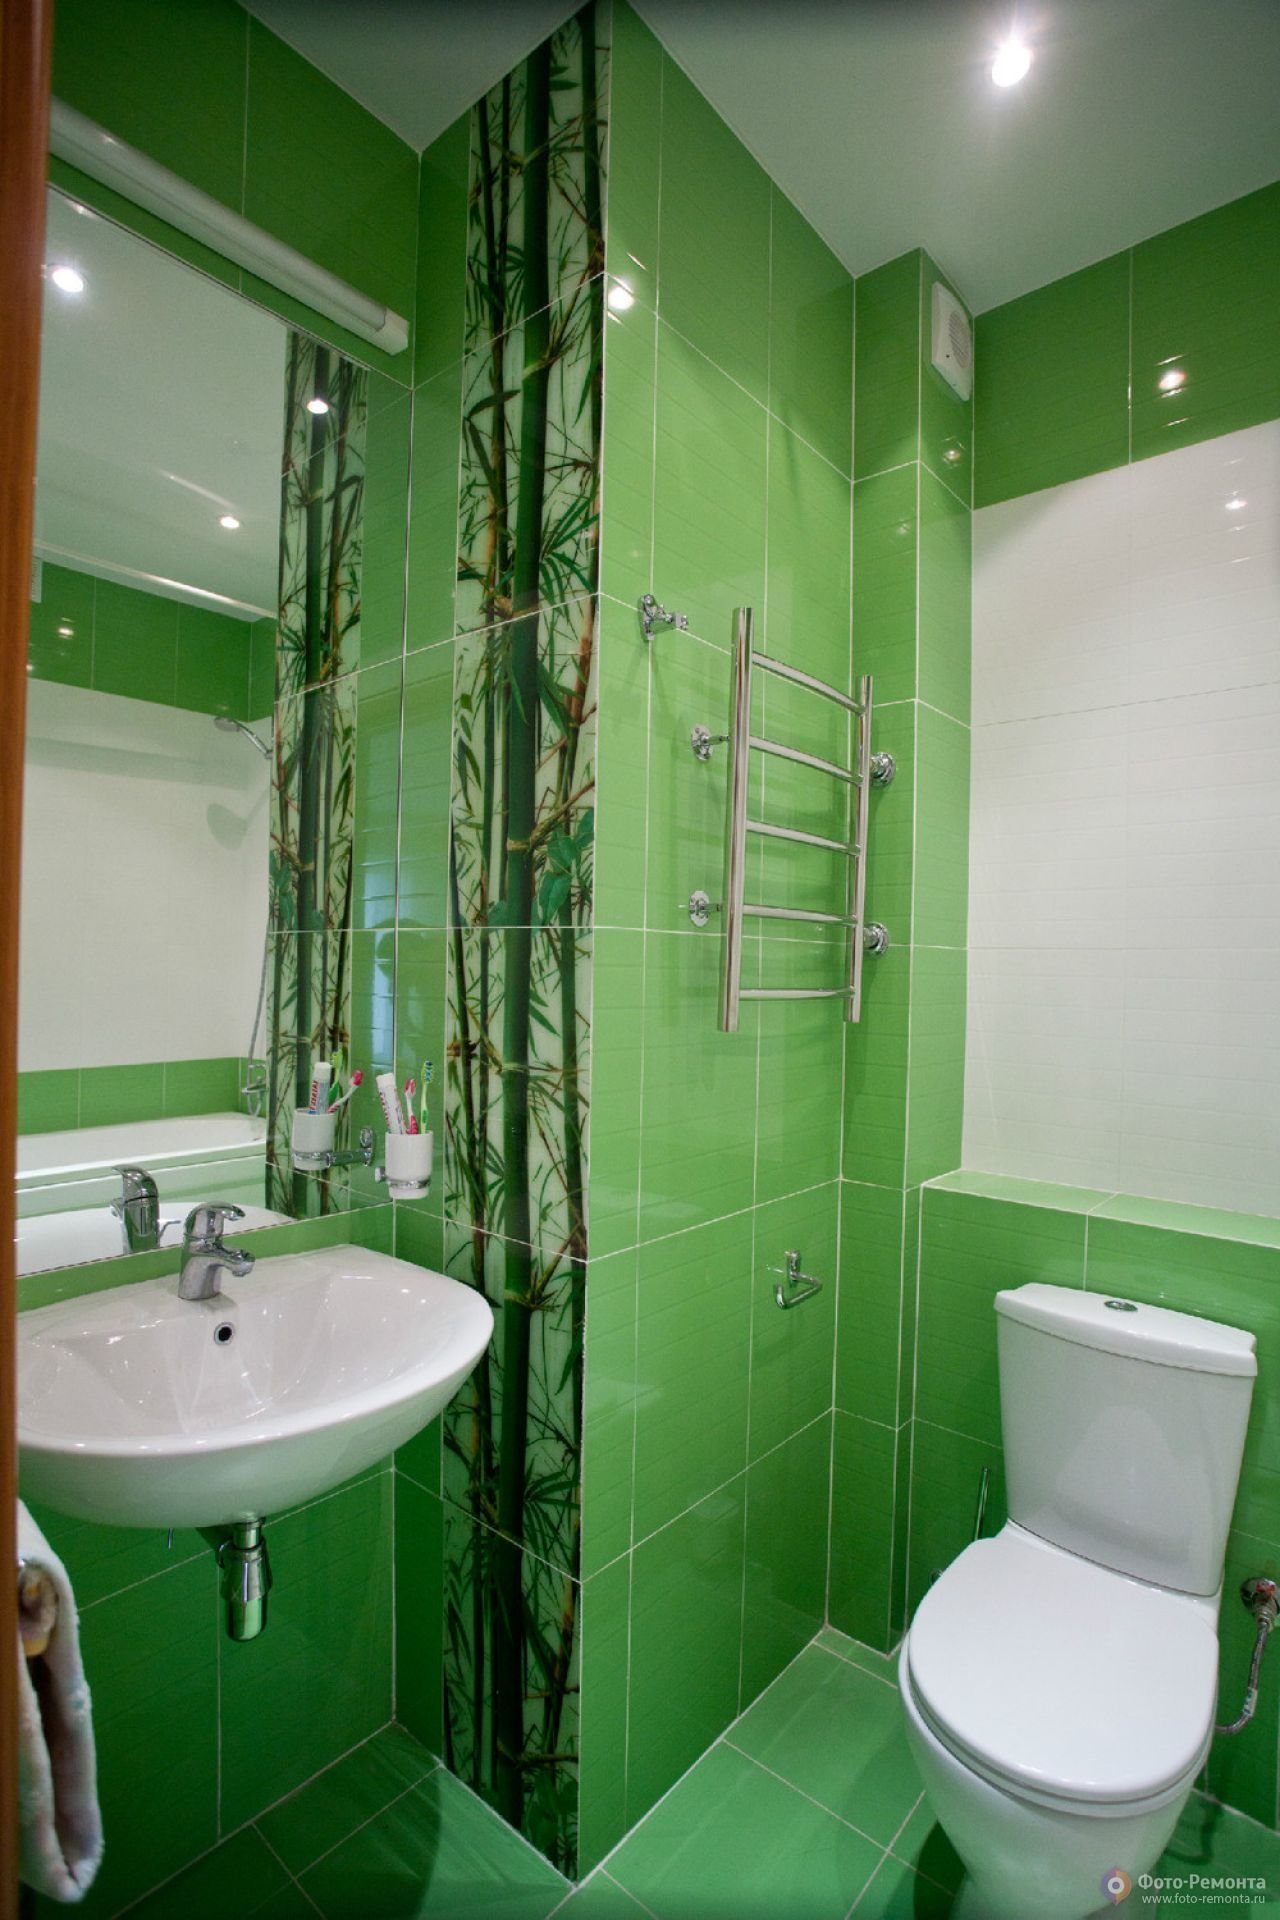 Туалет цвет зеленый. Зеленая плитка в туалете. Туалетная комната в зеленом цвете. Ванная в зеленом цвете. Салатовая ванная комната.